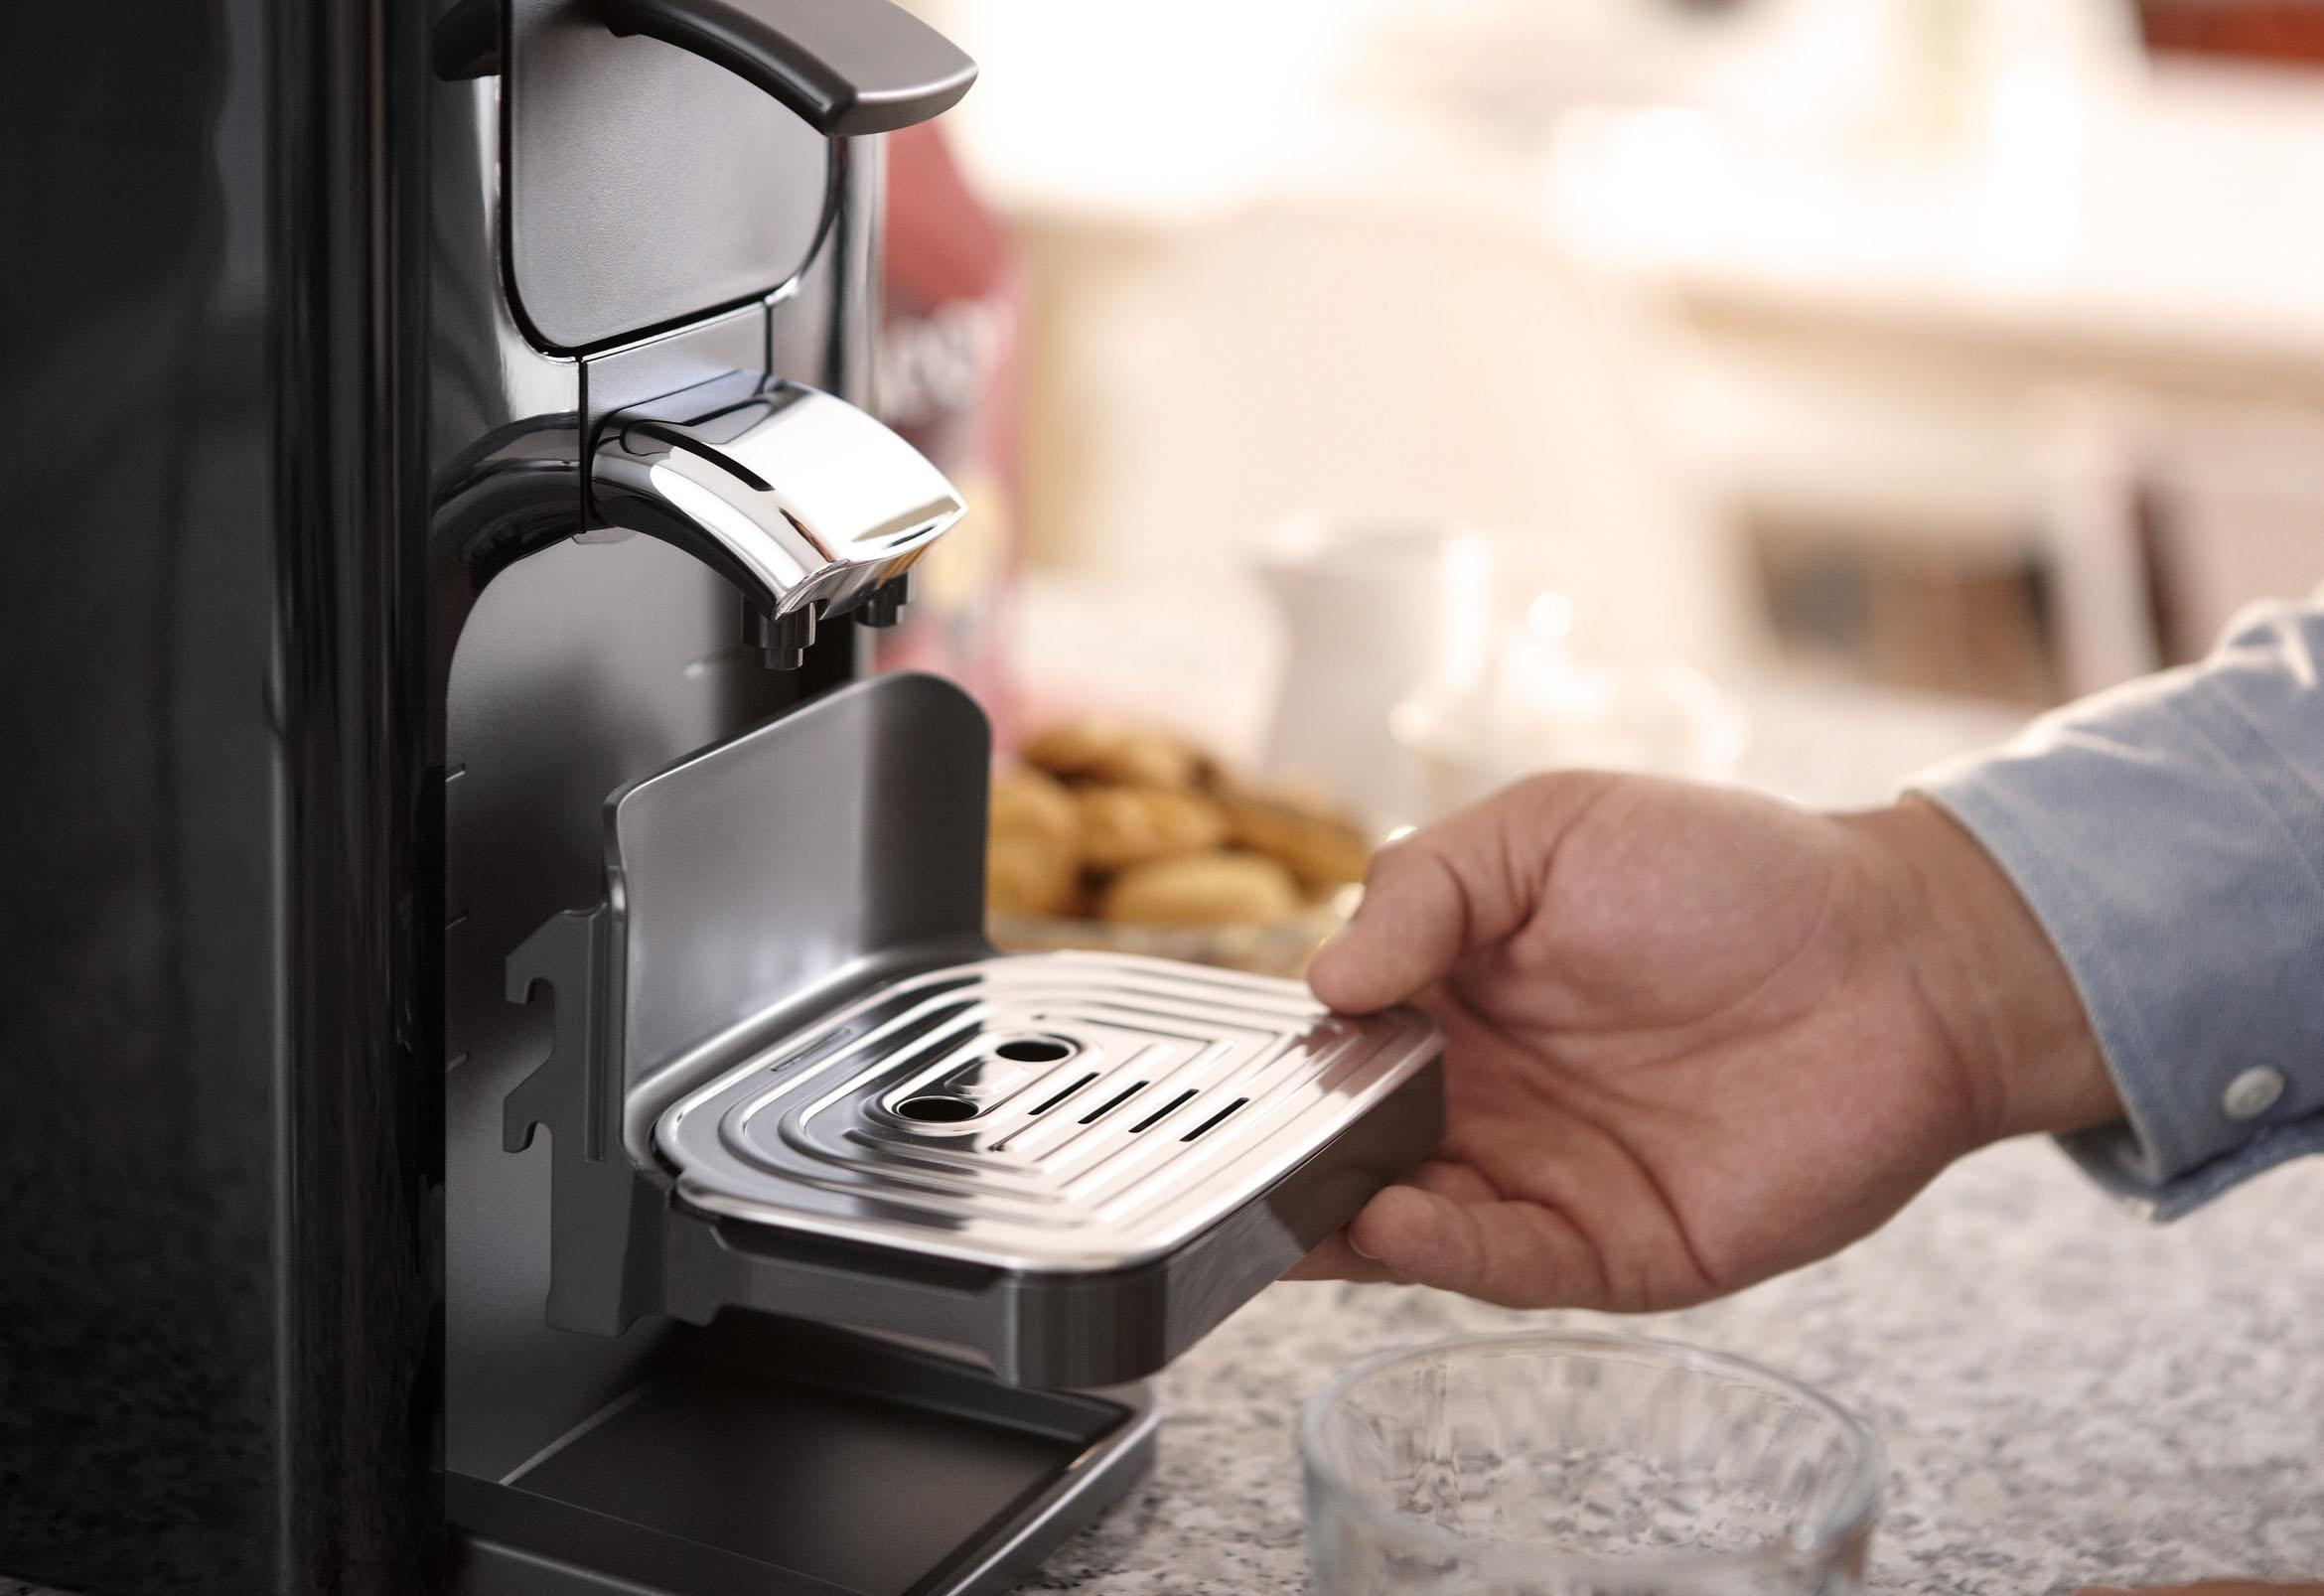 Philips Senseo Kaffeepadmaschine UVP Gratis Online Quadrante von 23,90 Wert -Zugaben »SENSEO® inkl. im OTTO Shop HD7865/60«, jetzt im